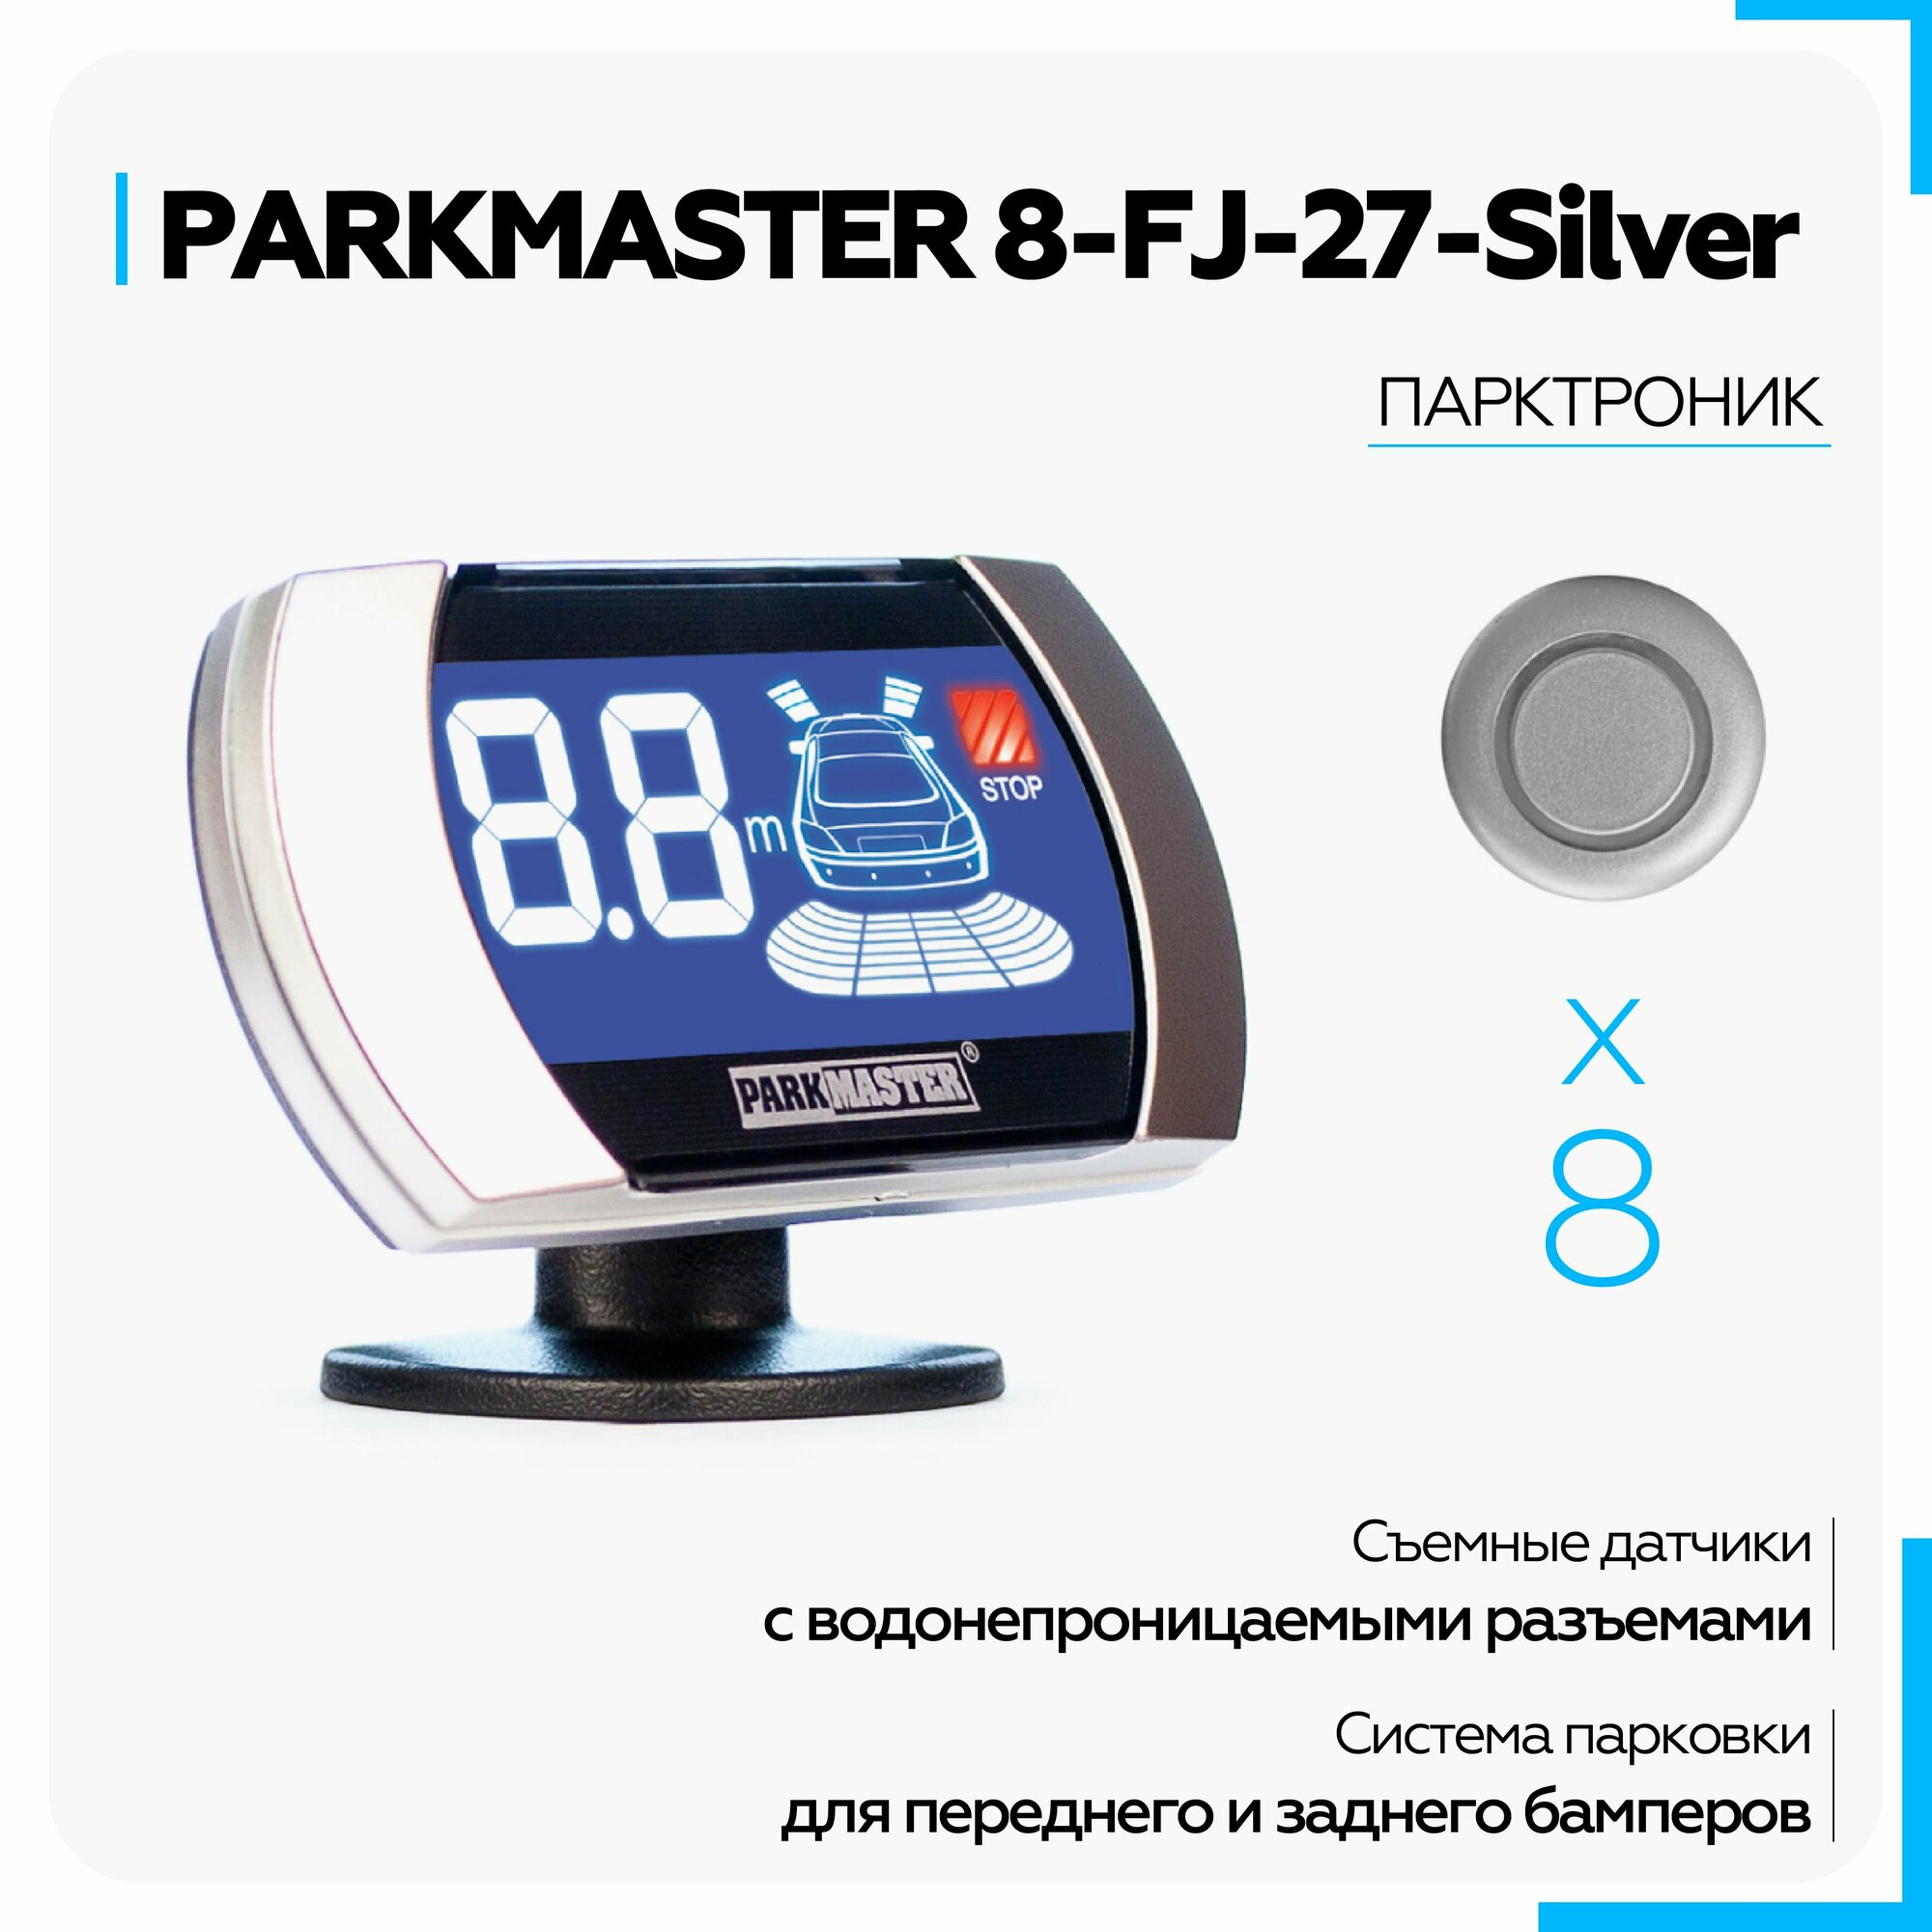 Парктроник на авто ParkMaster 8-FJ-27-Silver, 8 врезных серебристых датчиков с разъемом, индикатор "27"